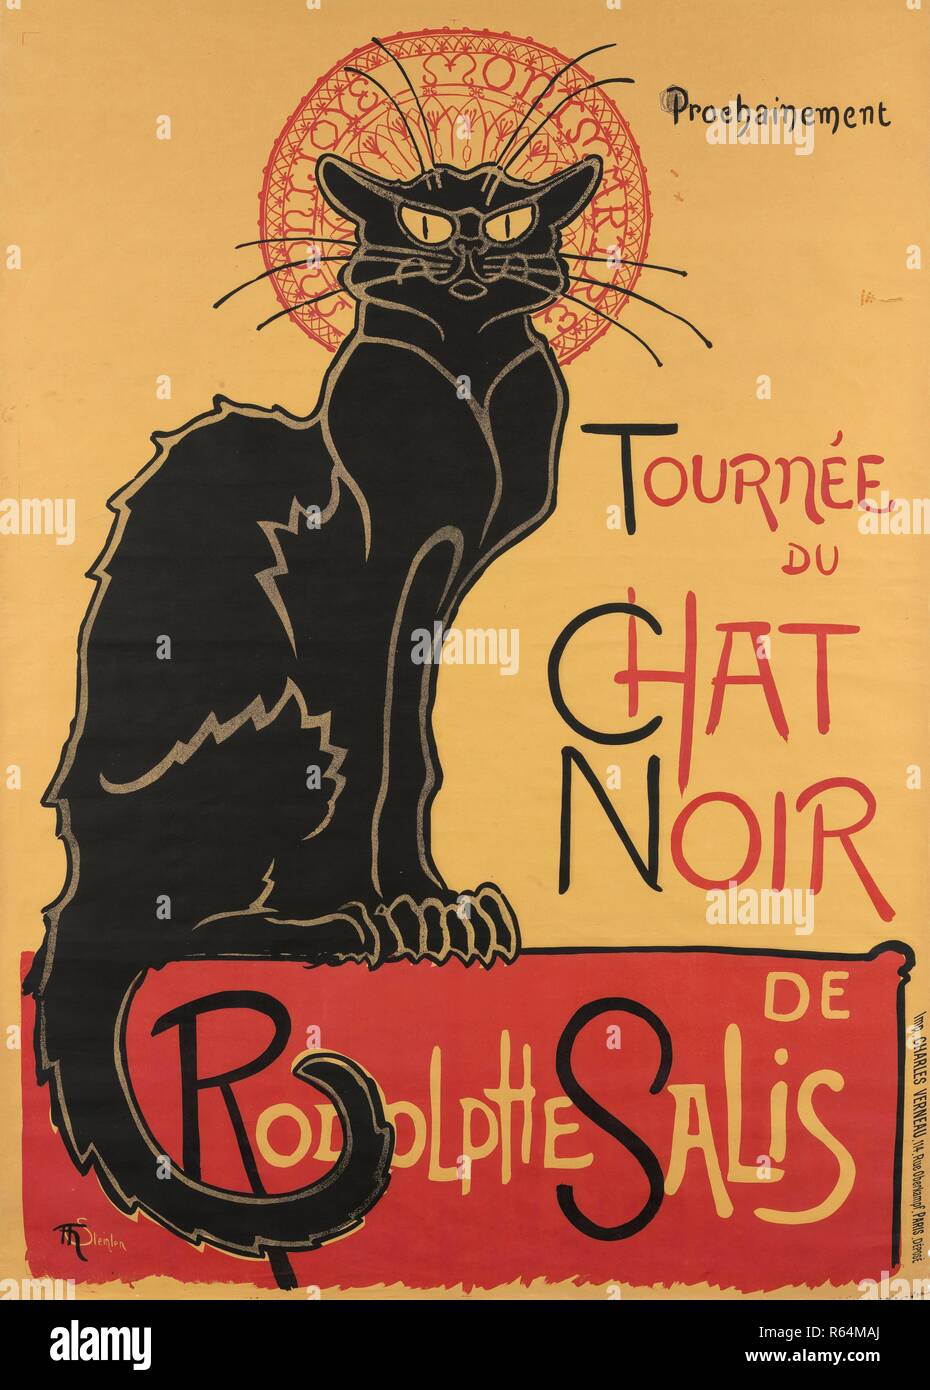 Poster for the tour of Le Noir. Dimensions: 140 x 100 cm, 136 cm